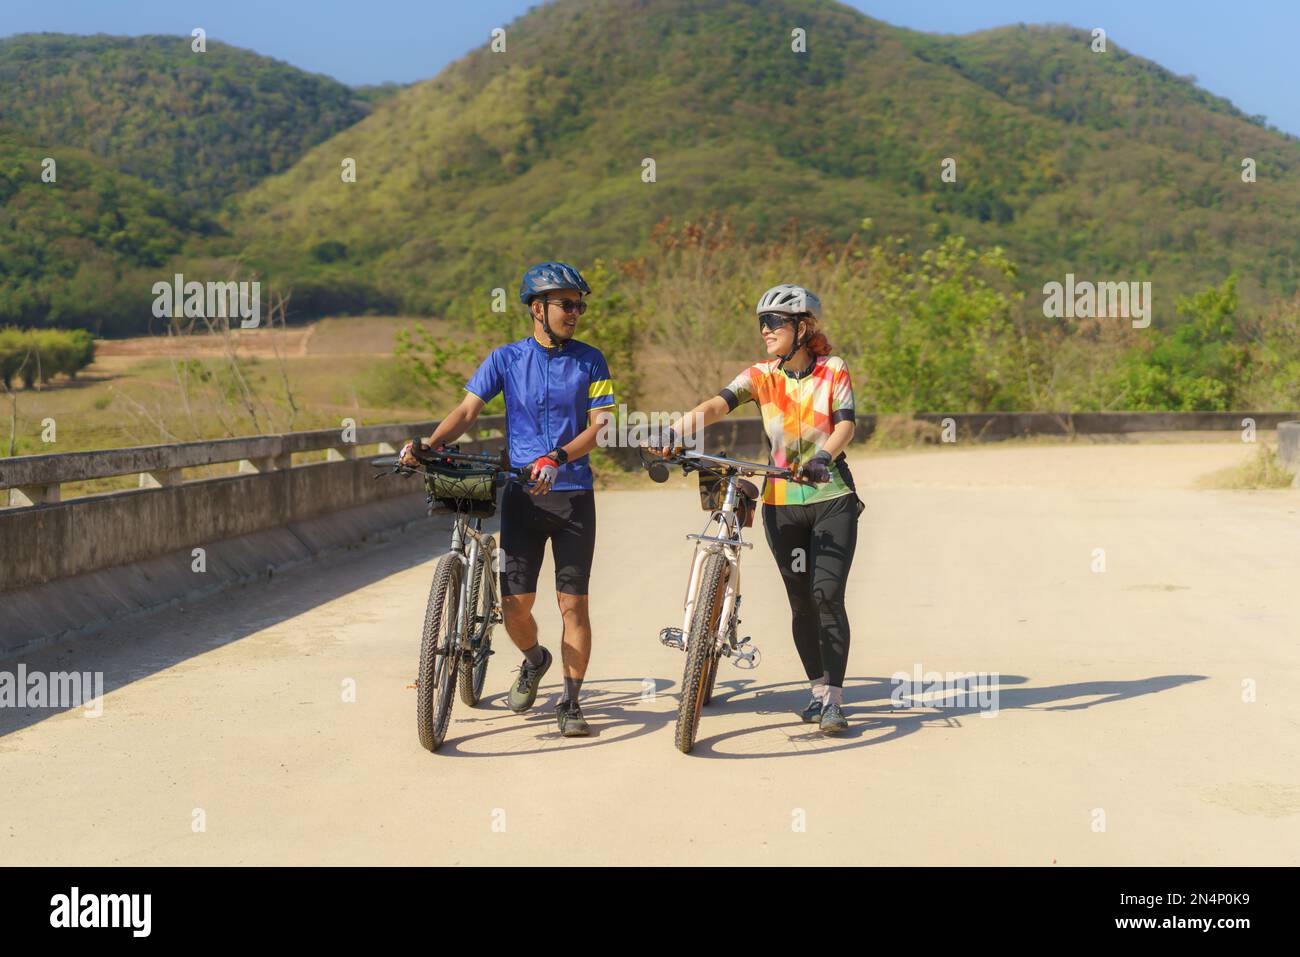 Un couple cycliste asiatique prend une pause après le vélo faites une pause pour marcher et marcher et parler les uns aux autres pour se détendre. Banque D'Images